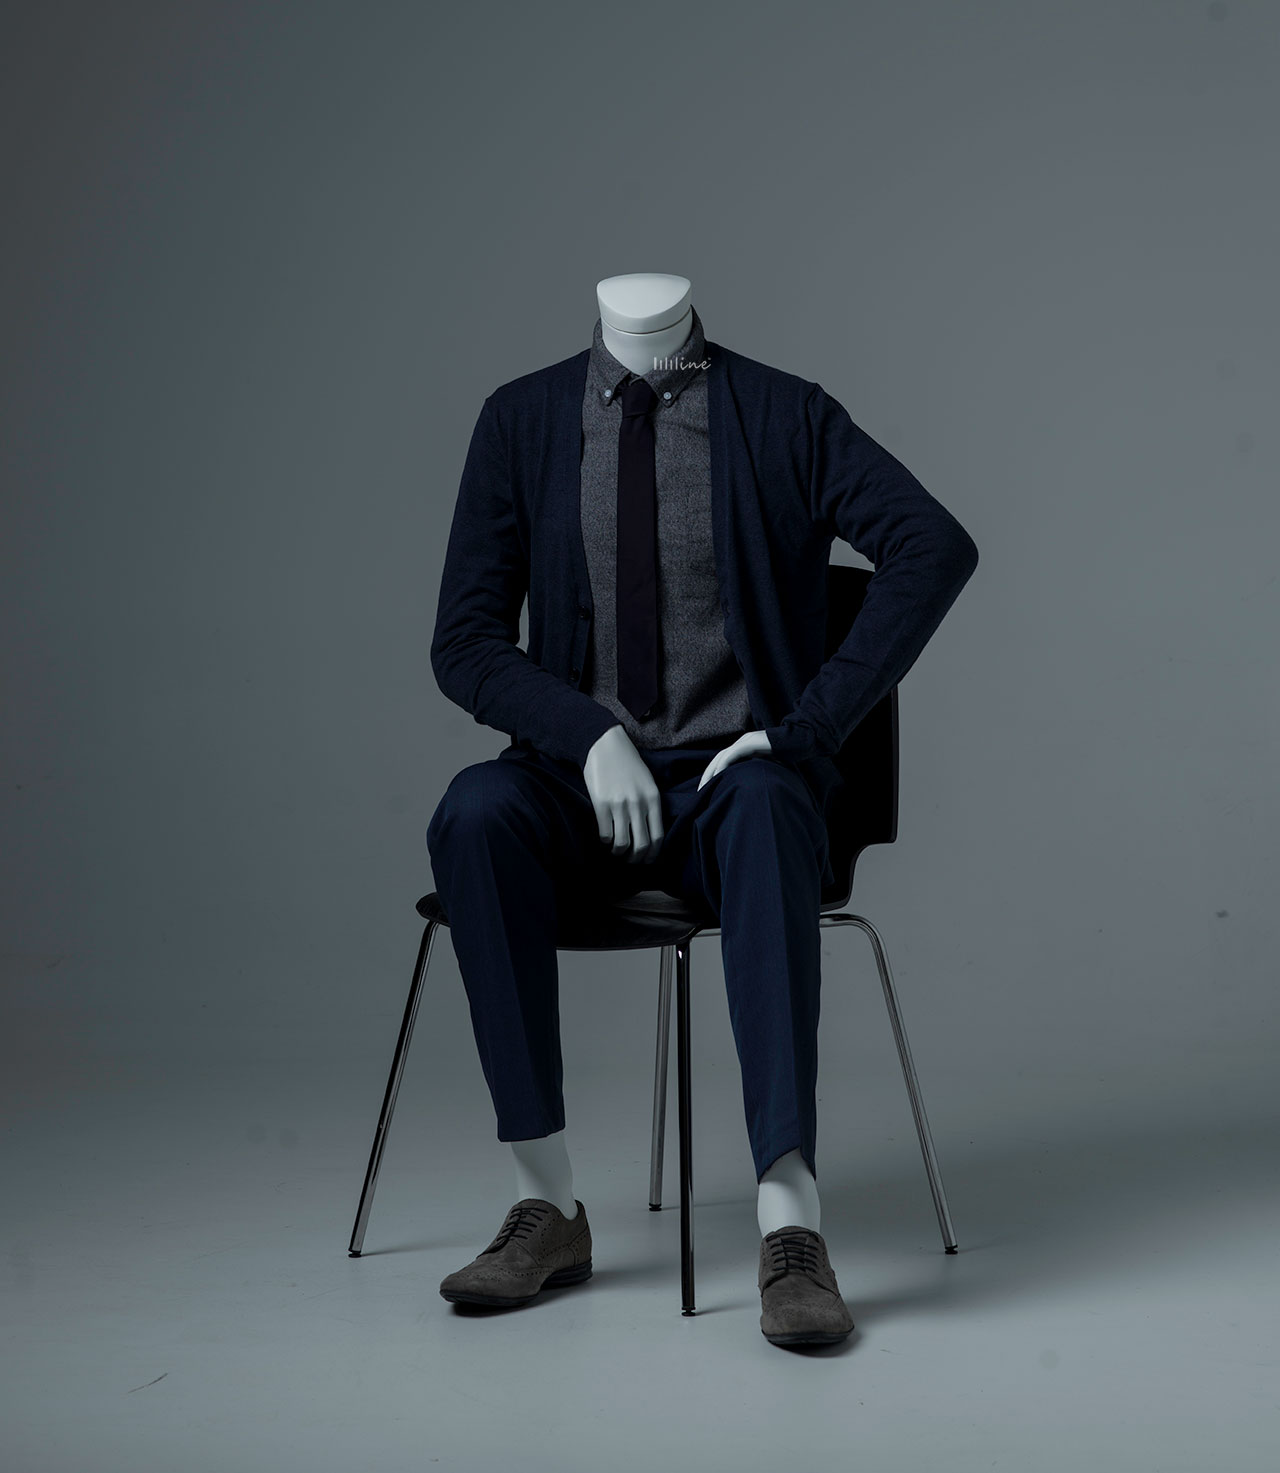 Foto seduta vestita maschio del manichino